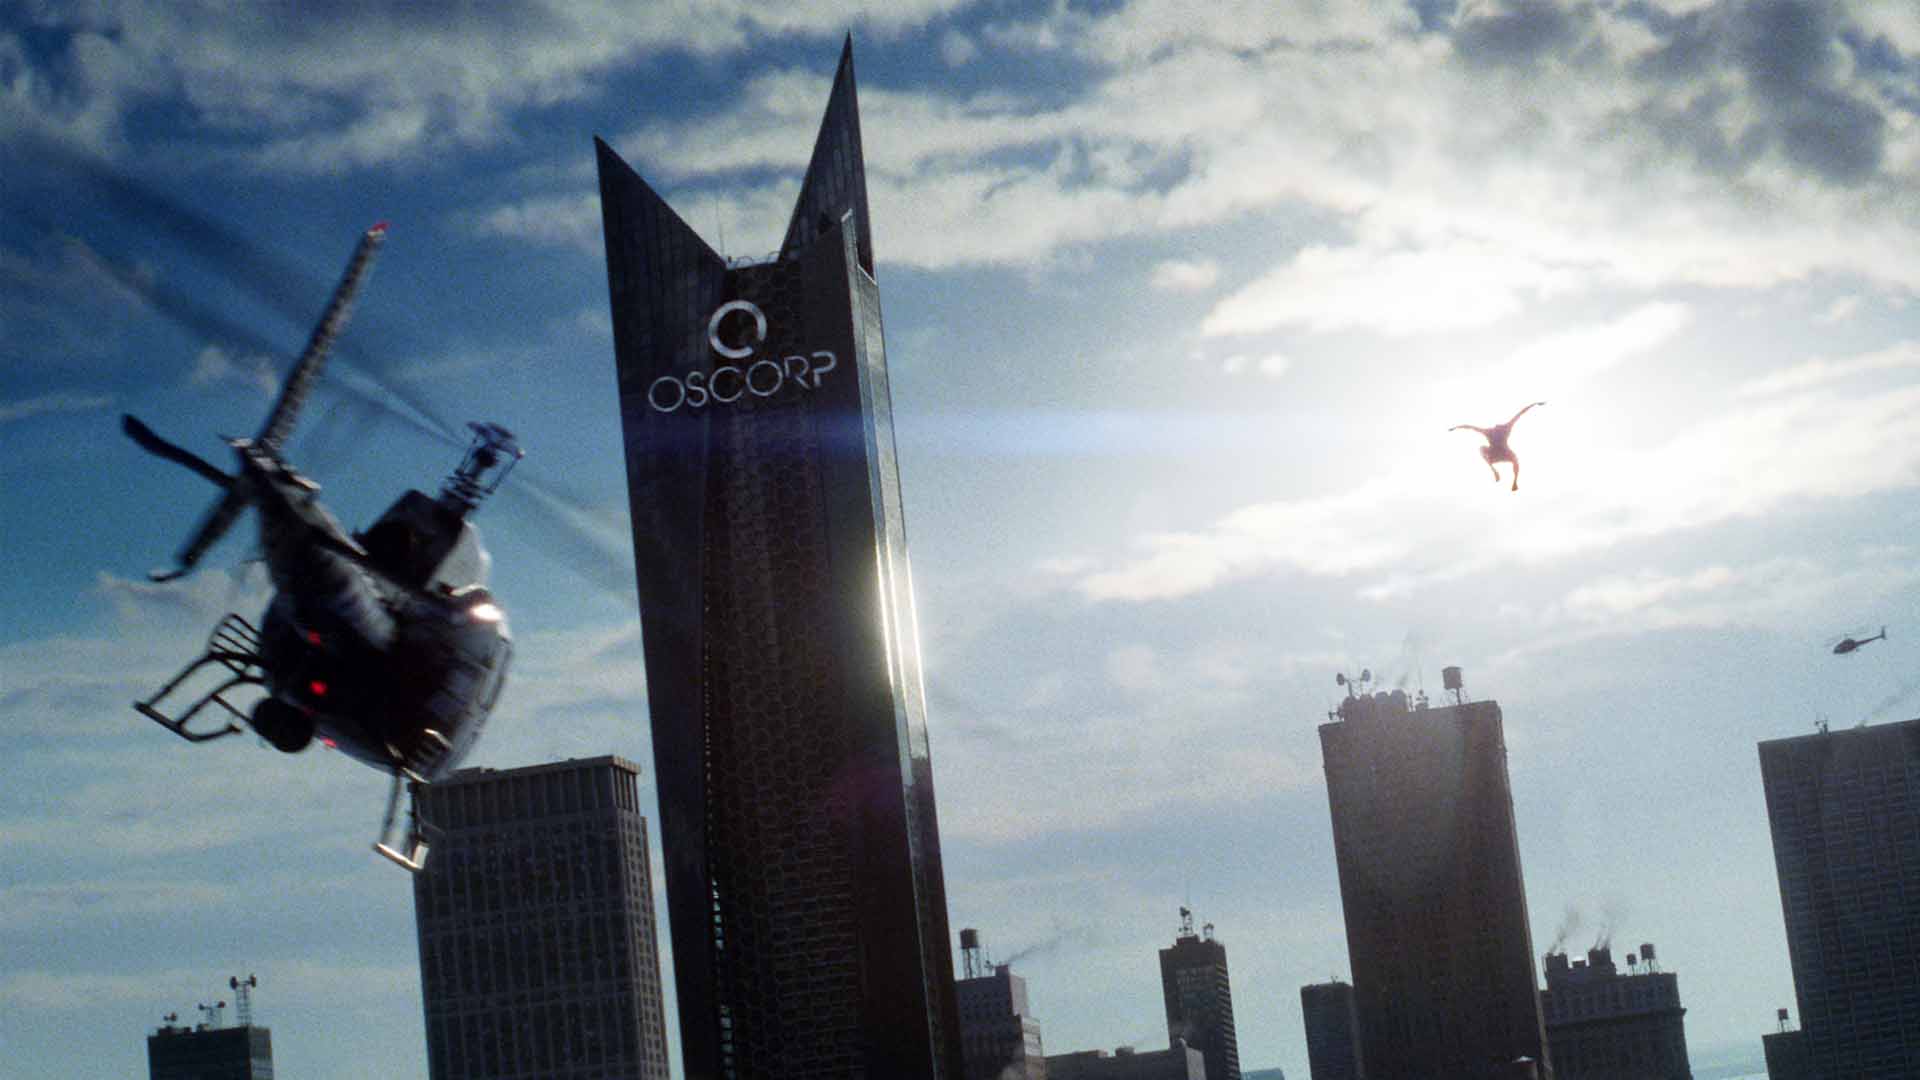 شرکت آزکورپ در فیلم اسپایدرمن